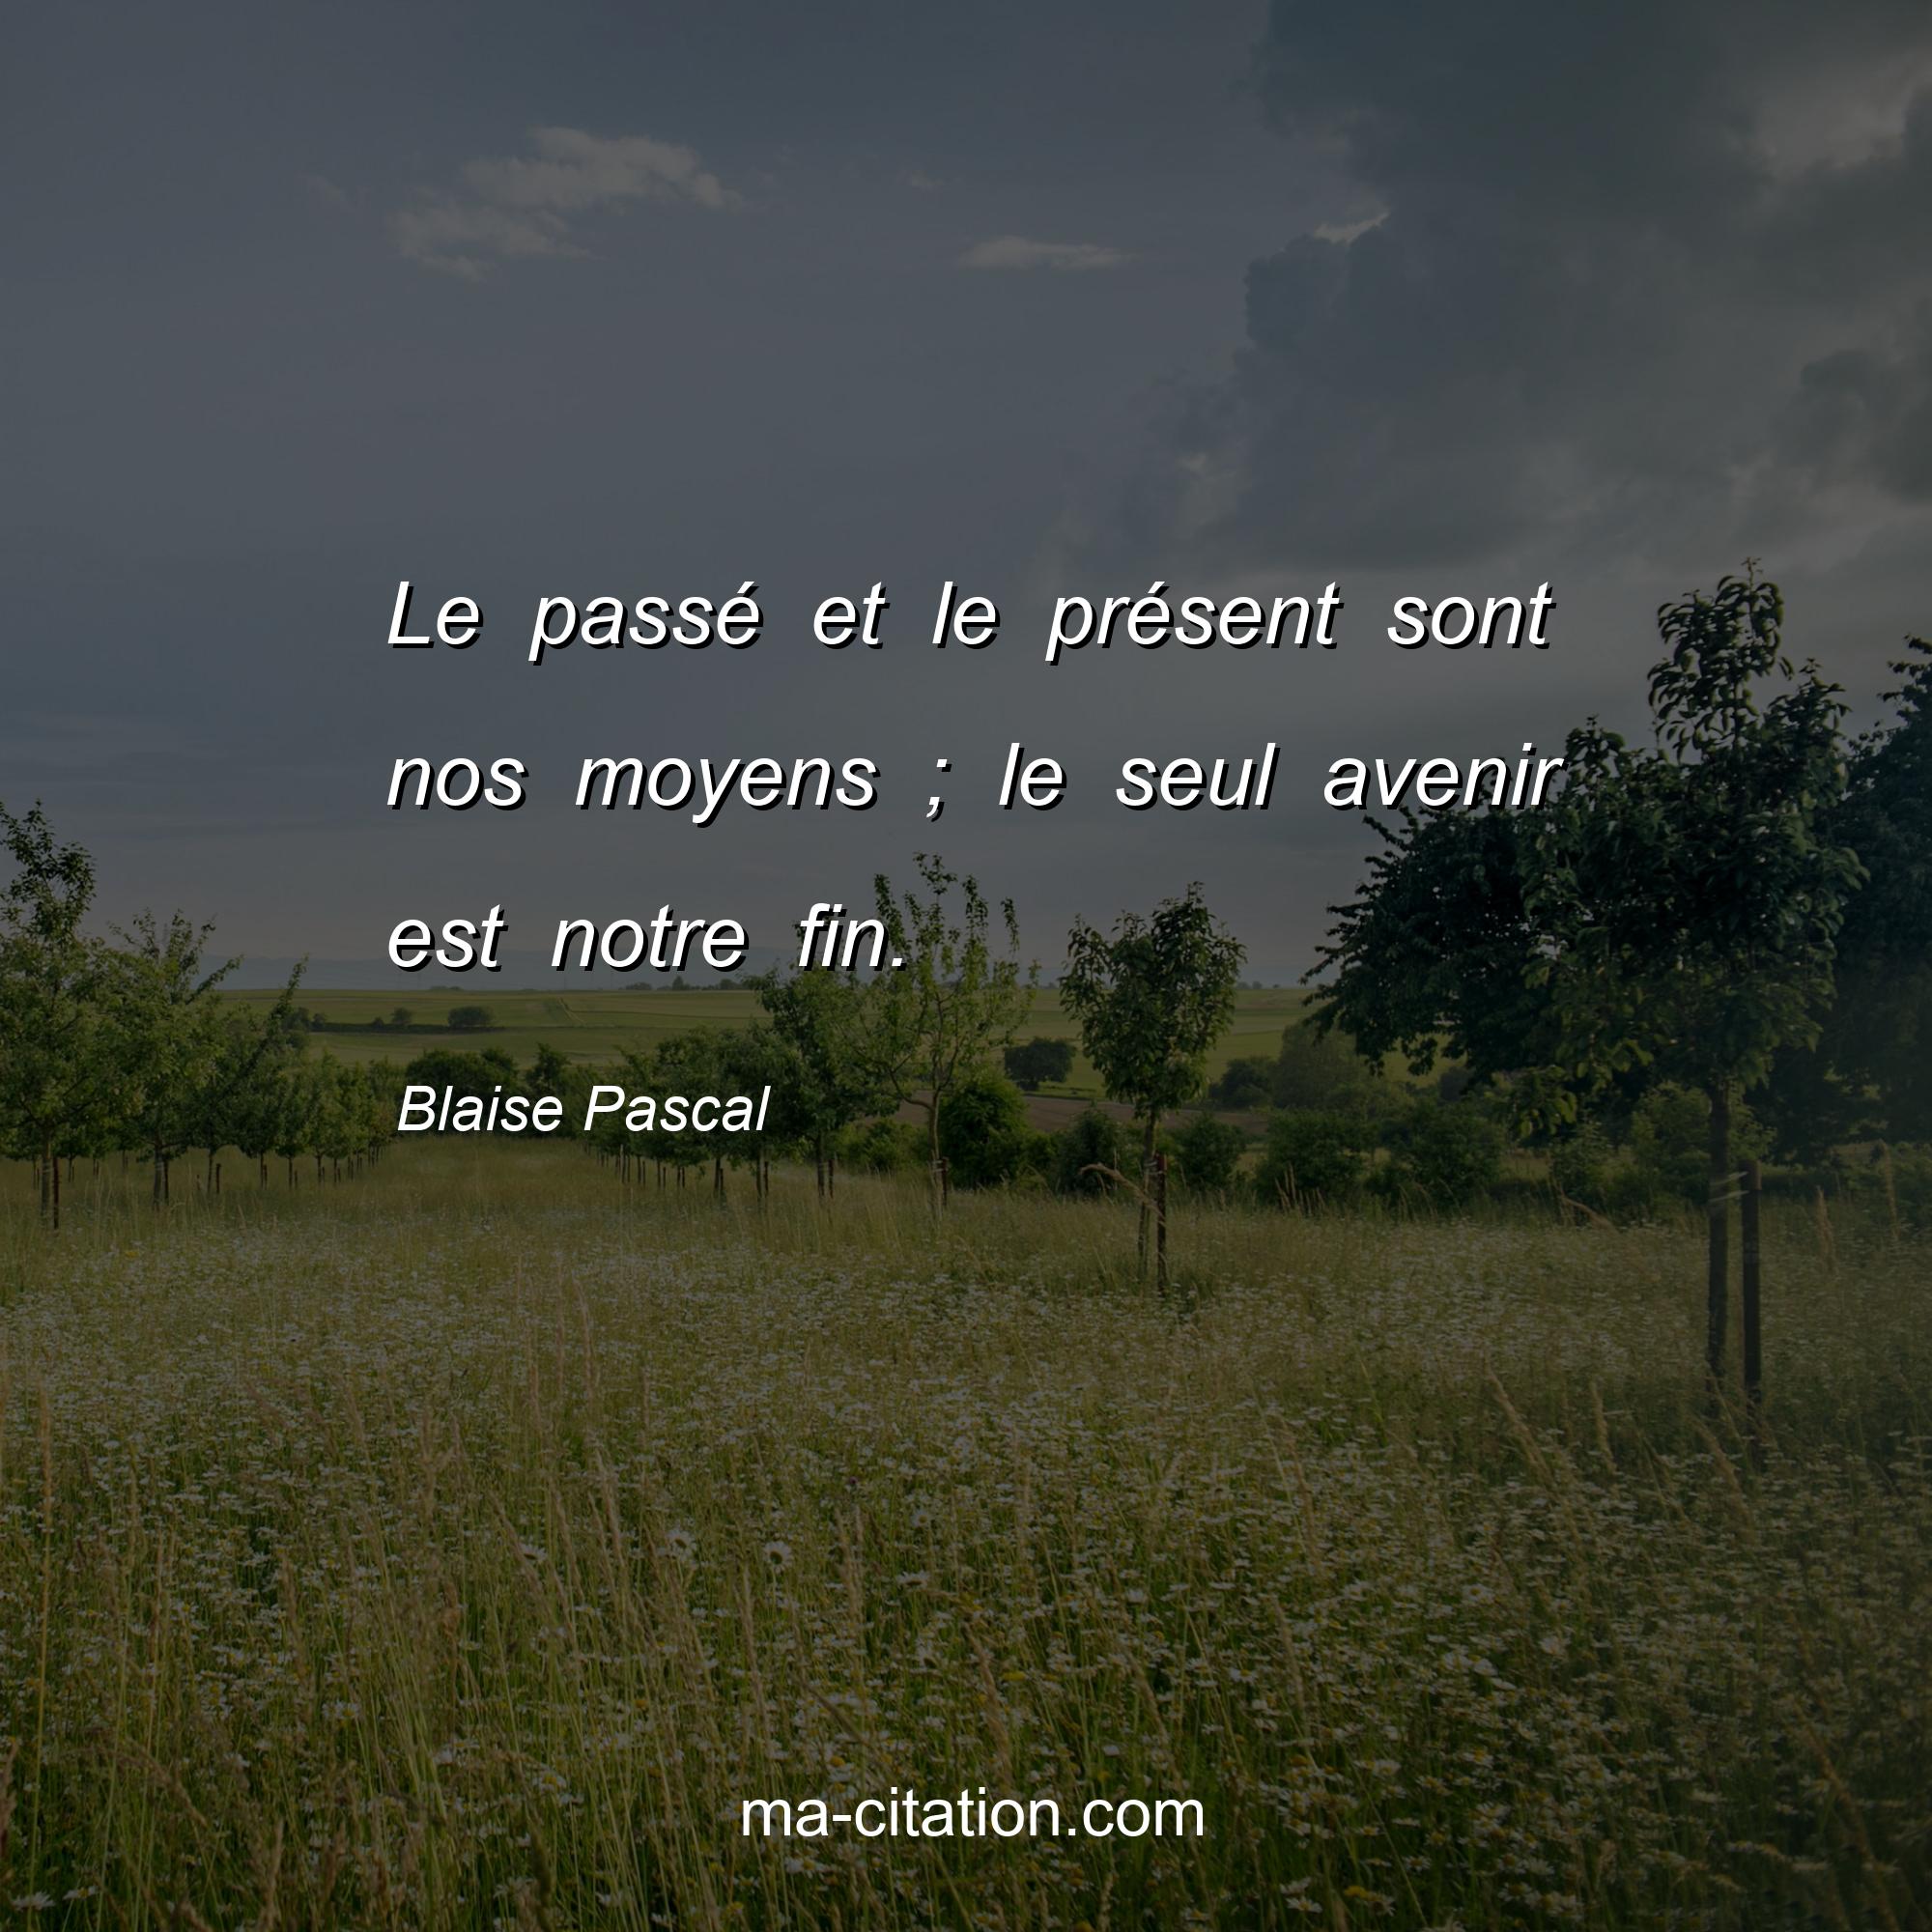 Blaise Pascal : Le passé et le présent sont nos moyens ; le seul avenir est notre fin.